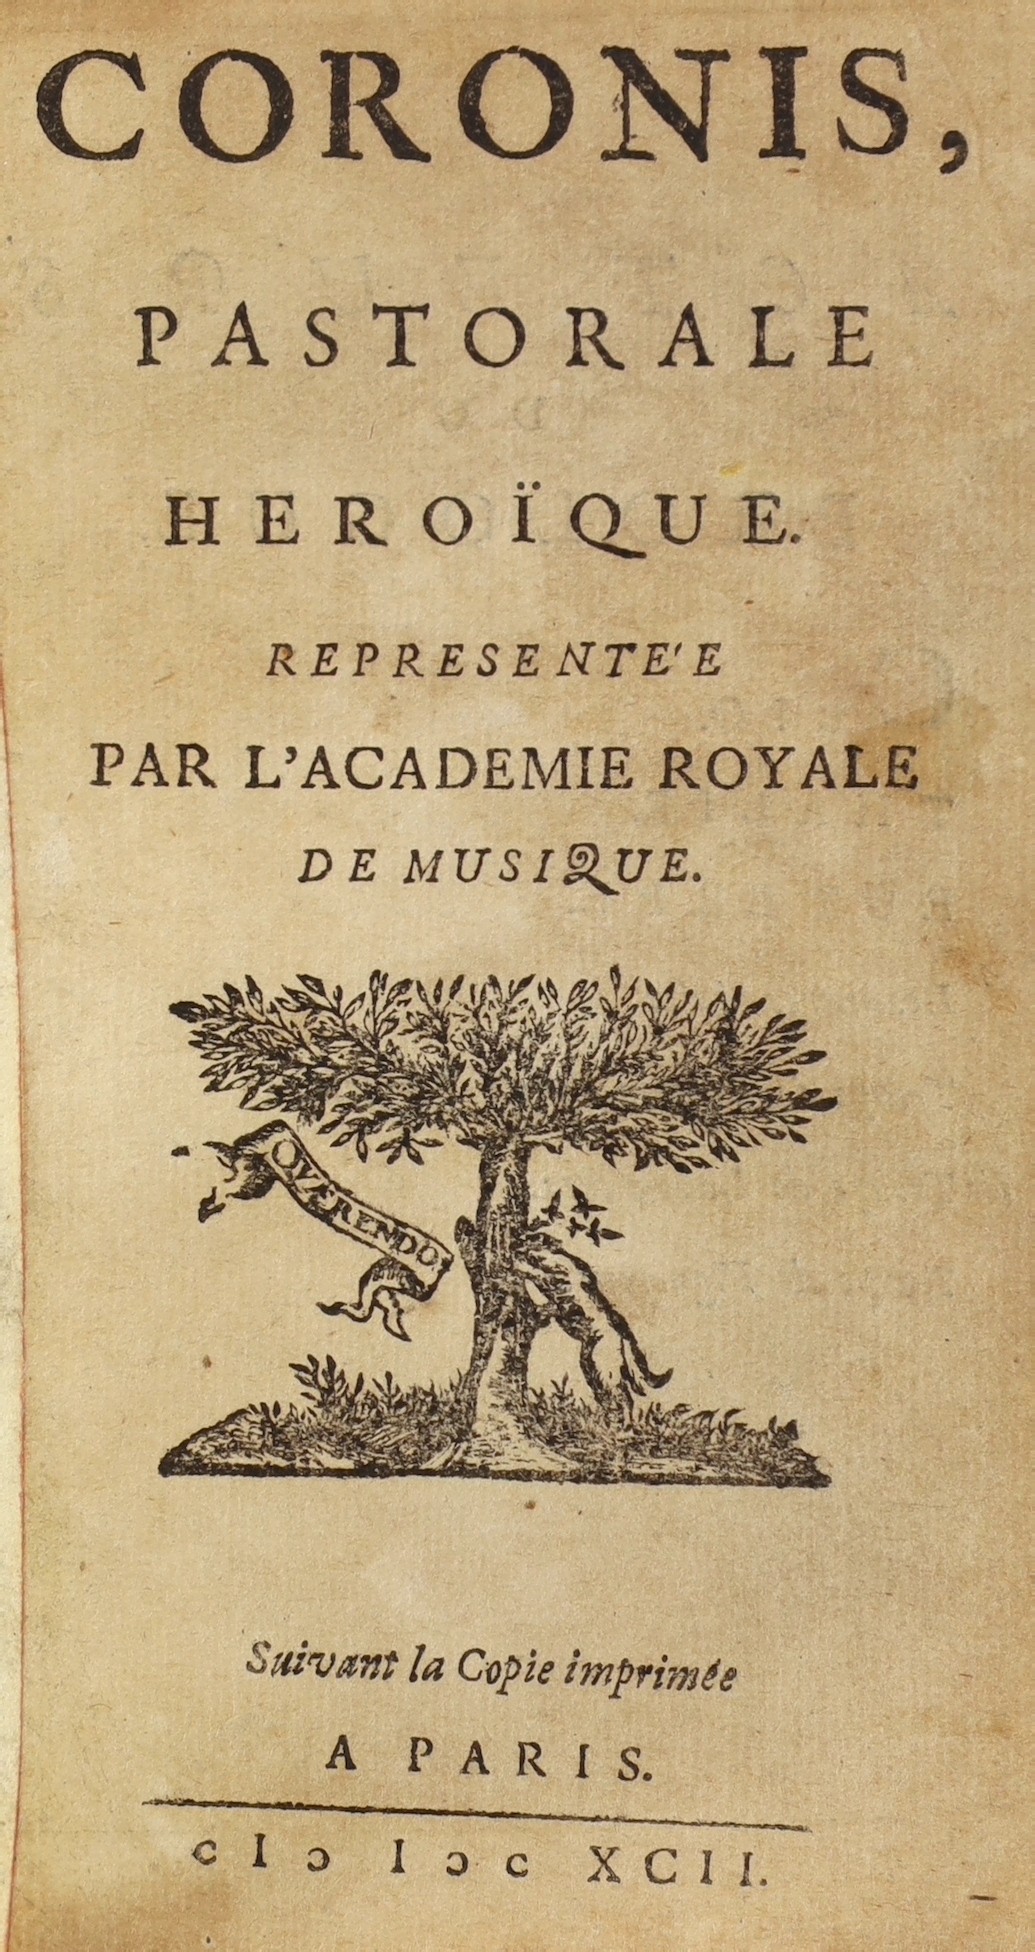 Chappuzeau de Bauge, Daniel-Paul - Coronis: Pastorale Heroique, 12mo, quarter calf gilt, with 60 blank leaves bound in, lacks frontispiece, Paris, 1692